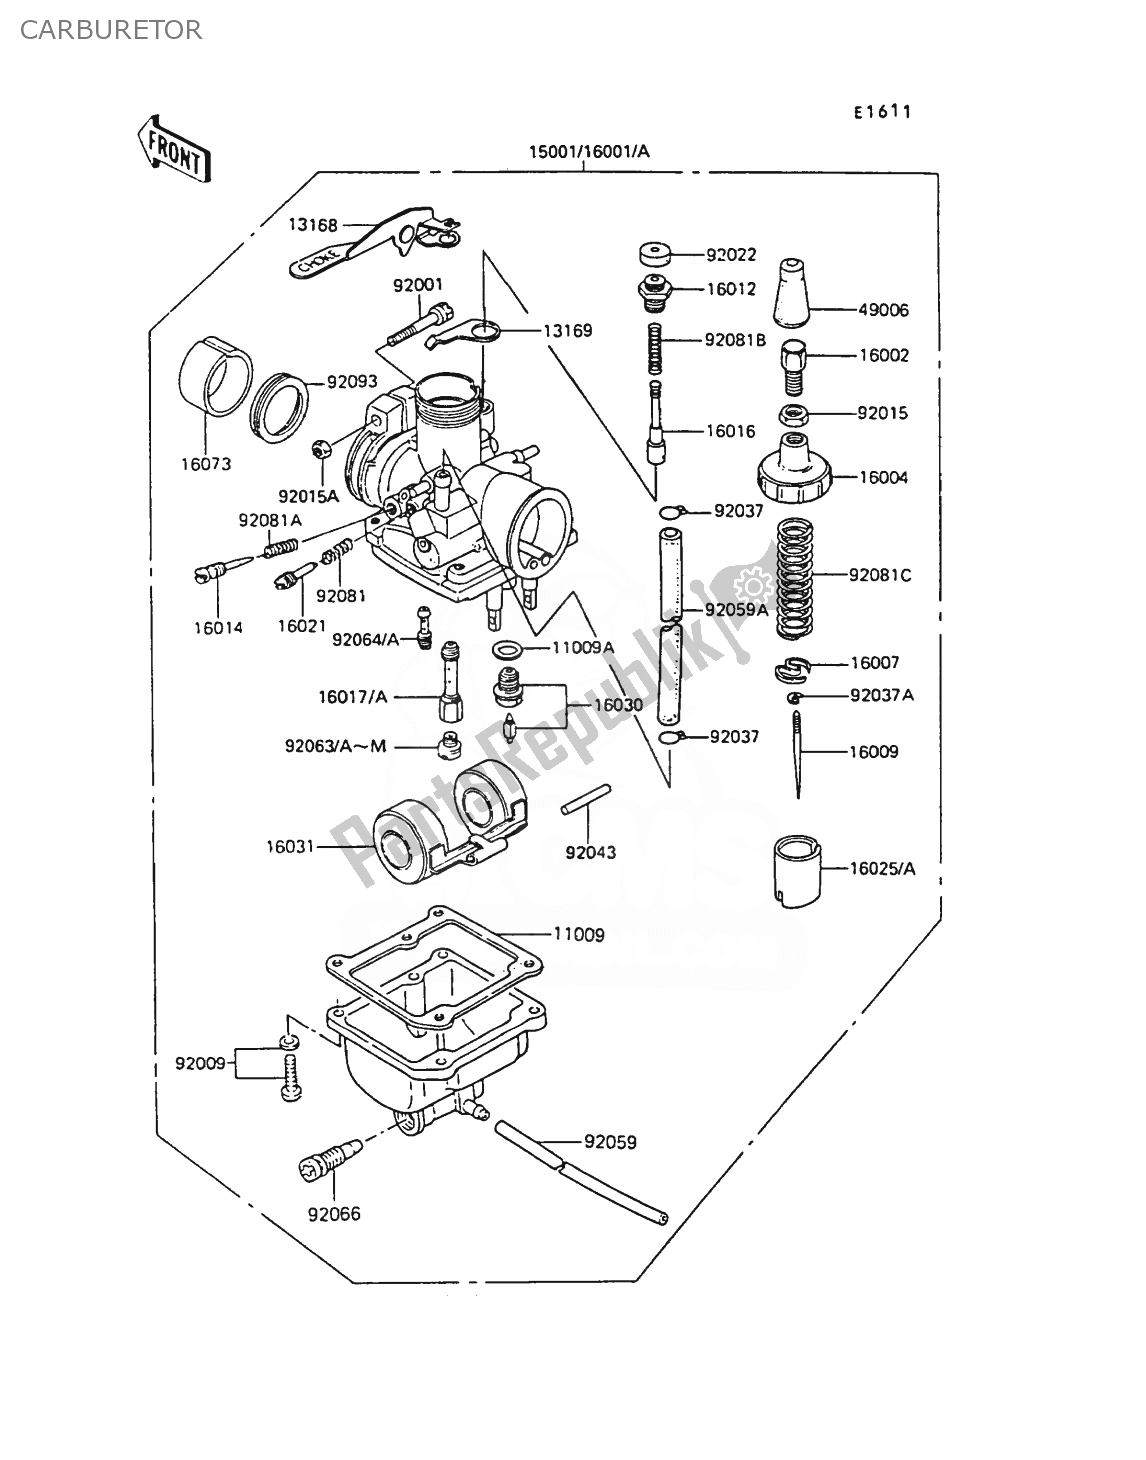 Toutes les pièces pour le Carburateur du Kawasaki AR 50 1989